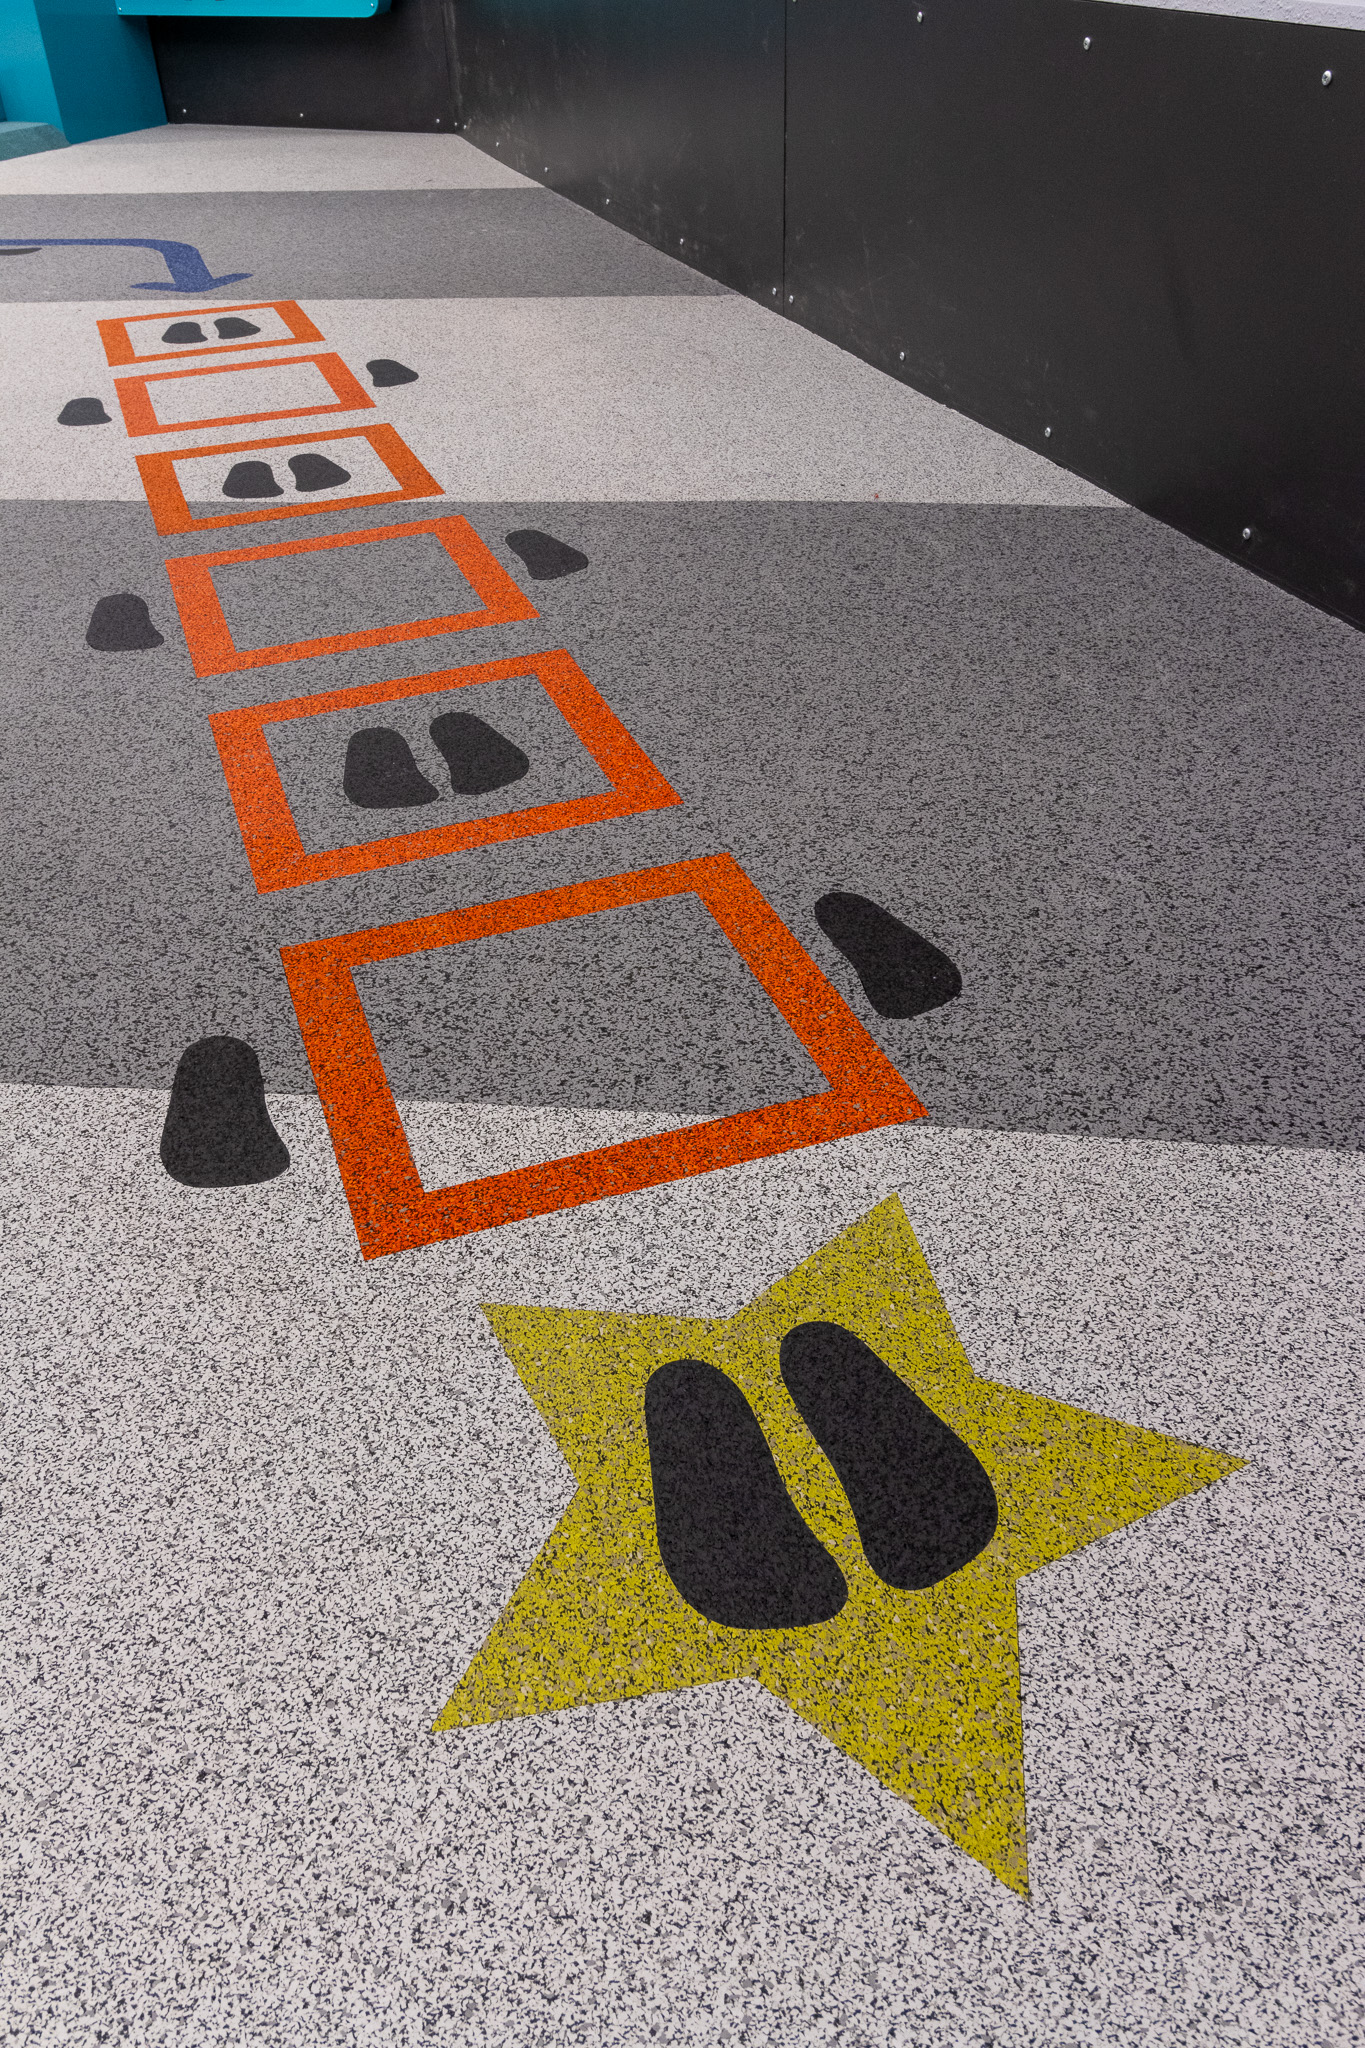 Rubber Flooring in Children's Museum